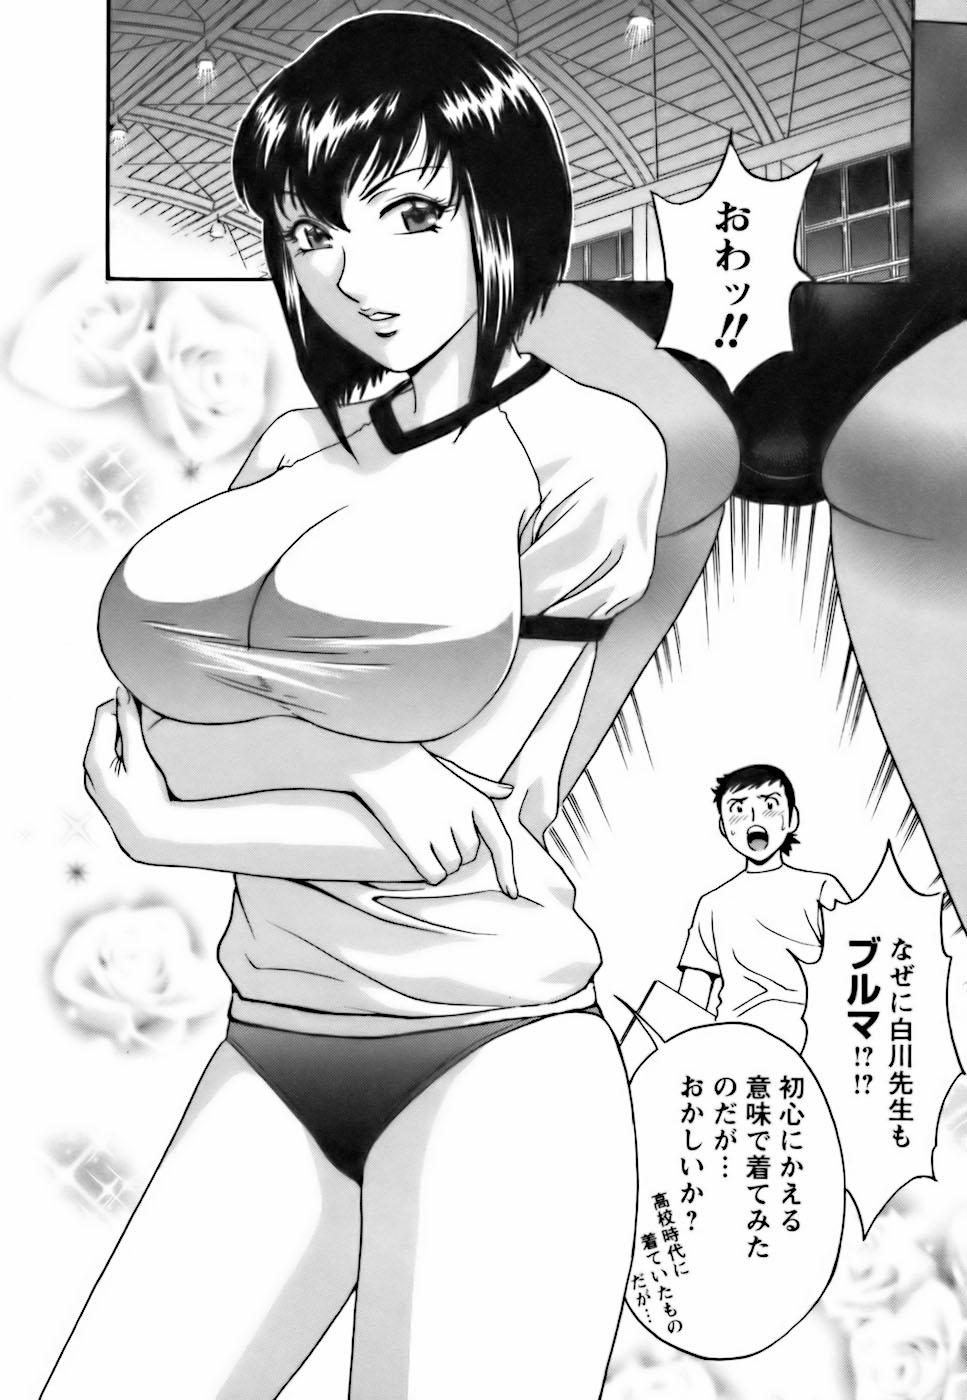 [Hidemaru] Mo-Retsu! Boin Sensei (Boing Boing Teacher) Vol.3 13